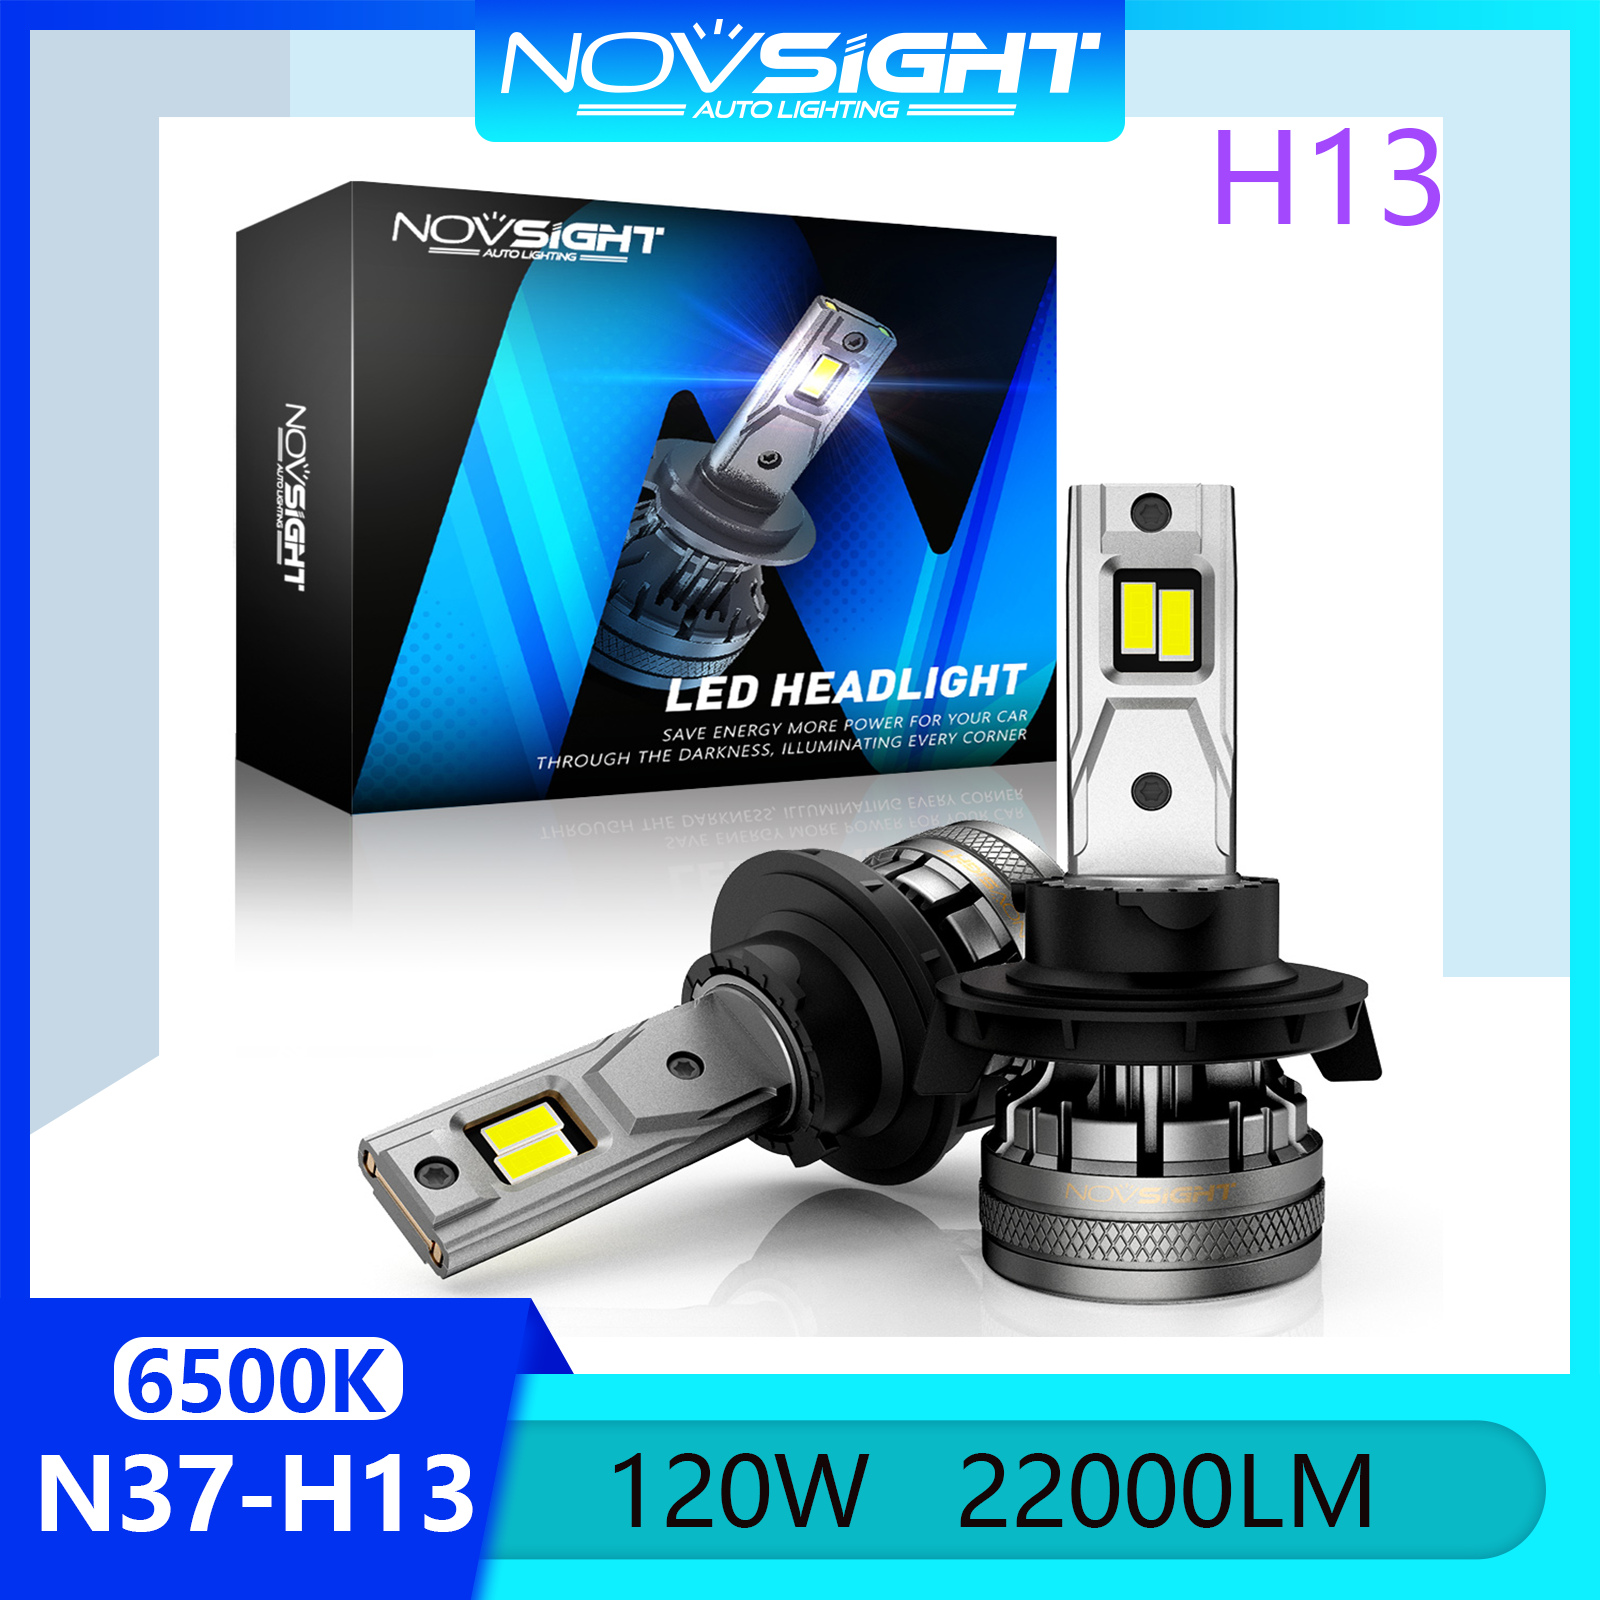 Novsight N37 6500K Đèn pha LED siêu sáng H13 Đèn pha LED Bộ đèn pha Đèn sương mù Chùm sáng cao / thấp 120W 22000LM Cắm và chạy Còn hàng 1 cặp 2 miếng Bảo hành 2 năm Miễn phí vận chuyển